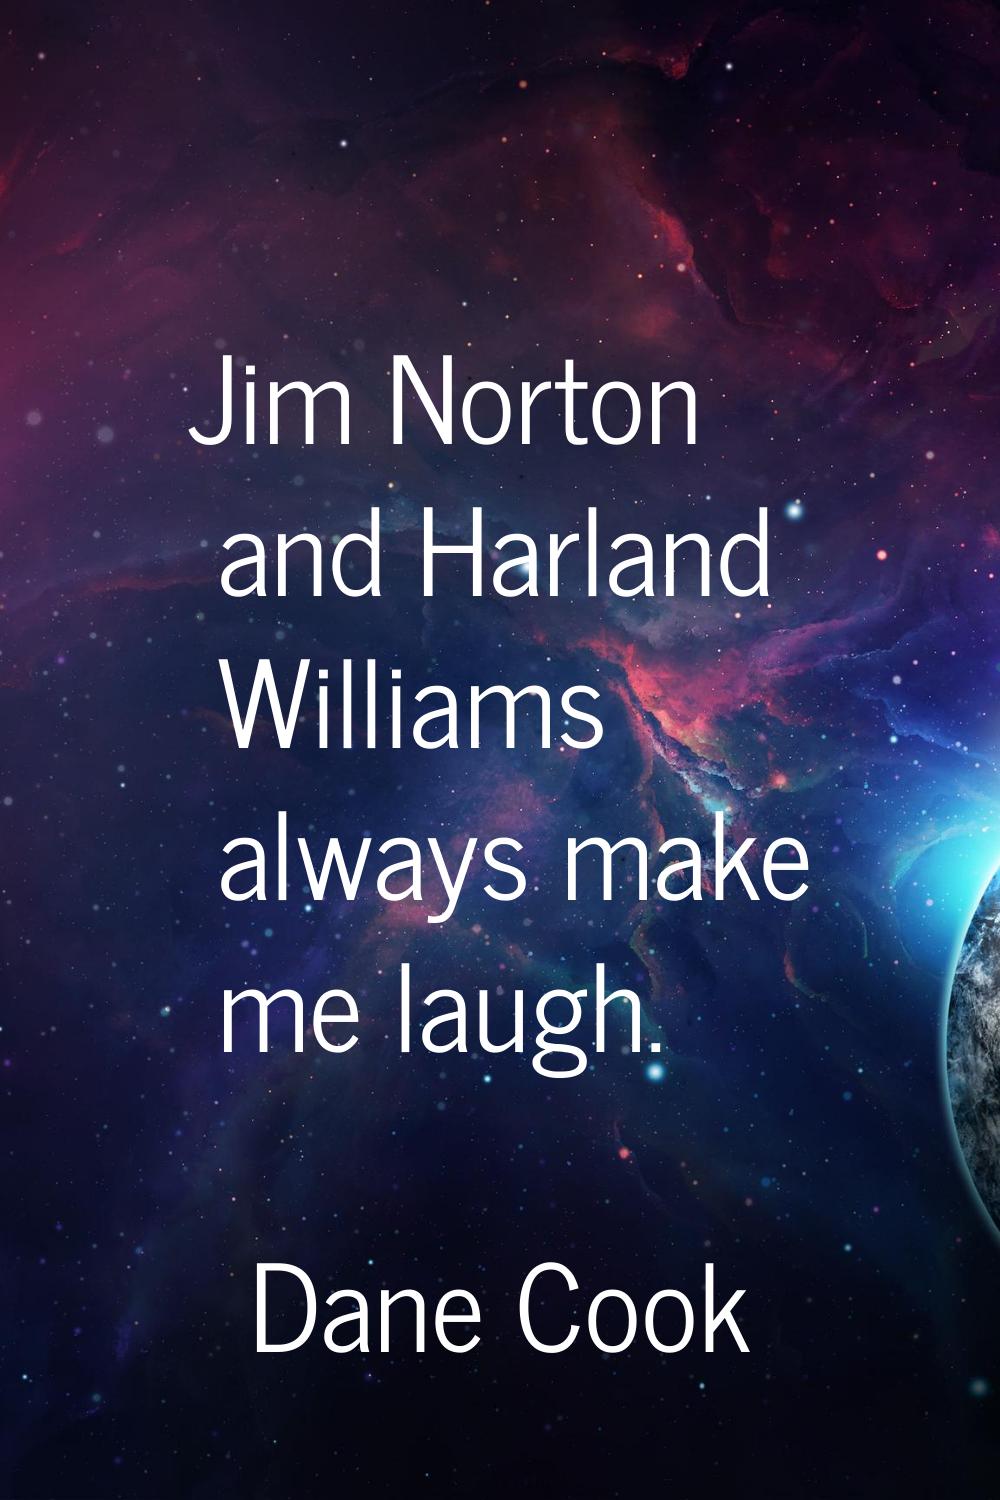 Jim Norton and Harland Williams always make me laugh.